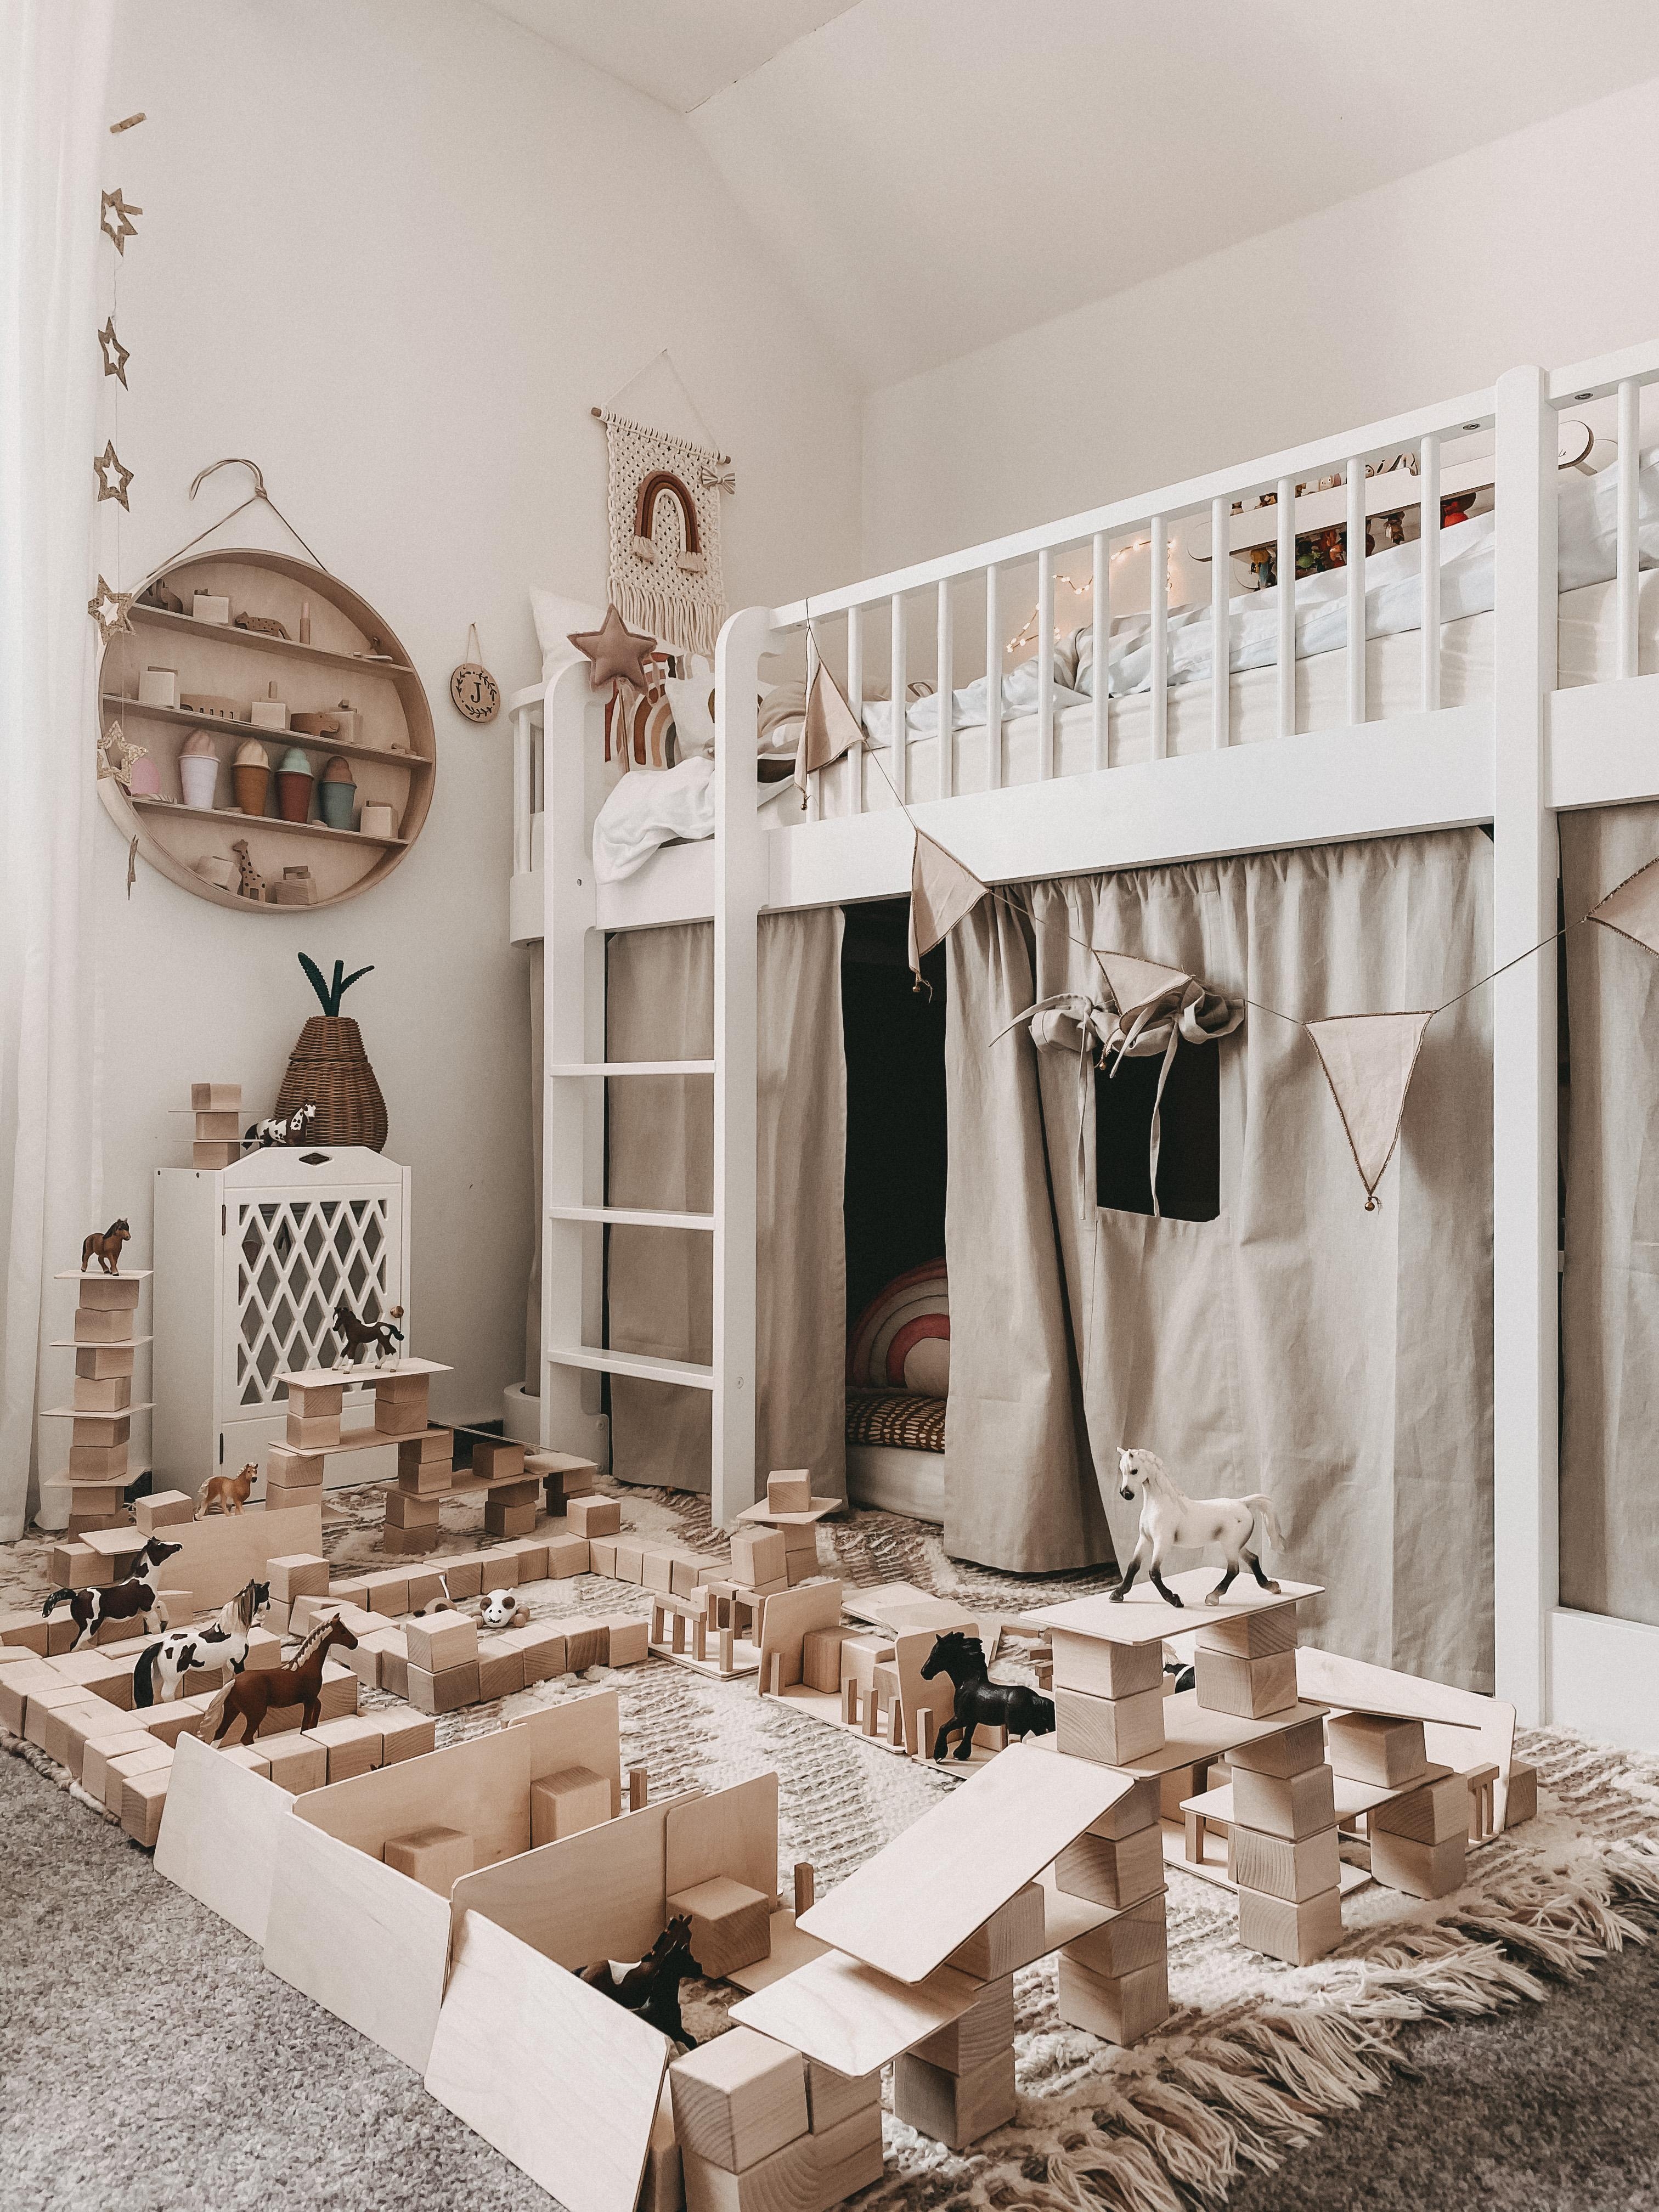 Holzliebe in Kinderzimmer 💛
#kinderzimmer
#Mädchenzimmer
#hochbett
#nachhaltigesspielzeug